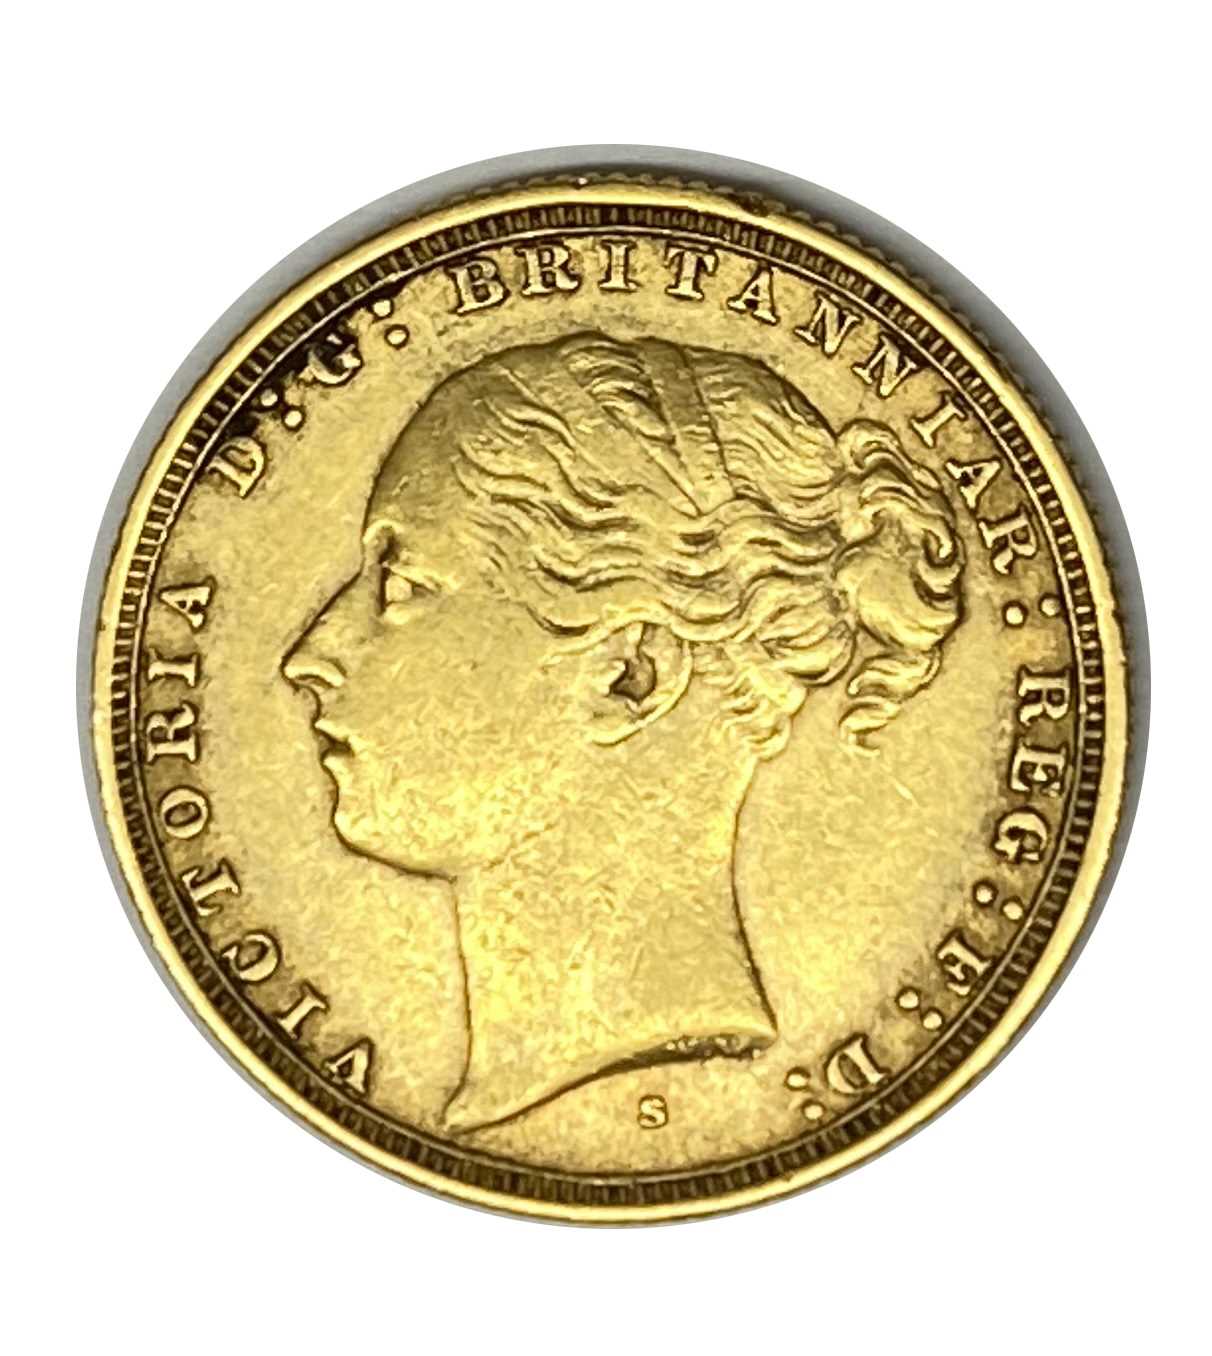 Lot 5 - Queen Victoria gold Sovereign coin, 1884